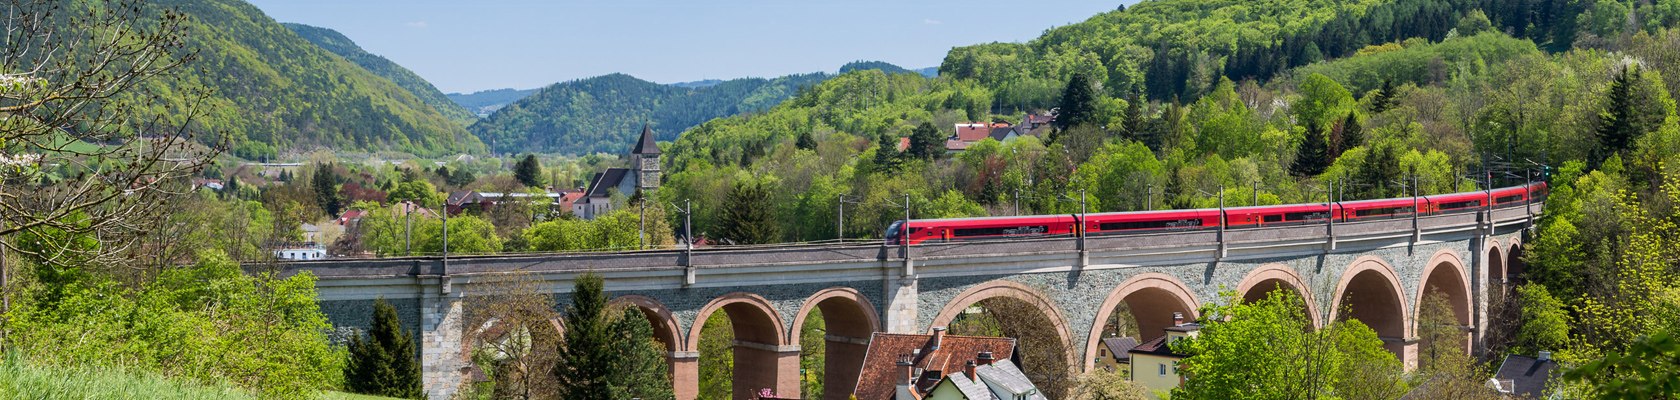 UNESCO Weltkulturerbe Semmeringeisenbahn in Payerbach, © Wiener Alpen / Franz Zwickl